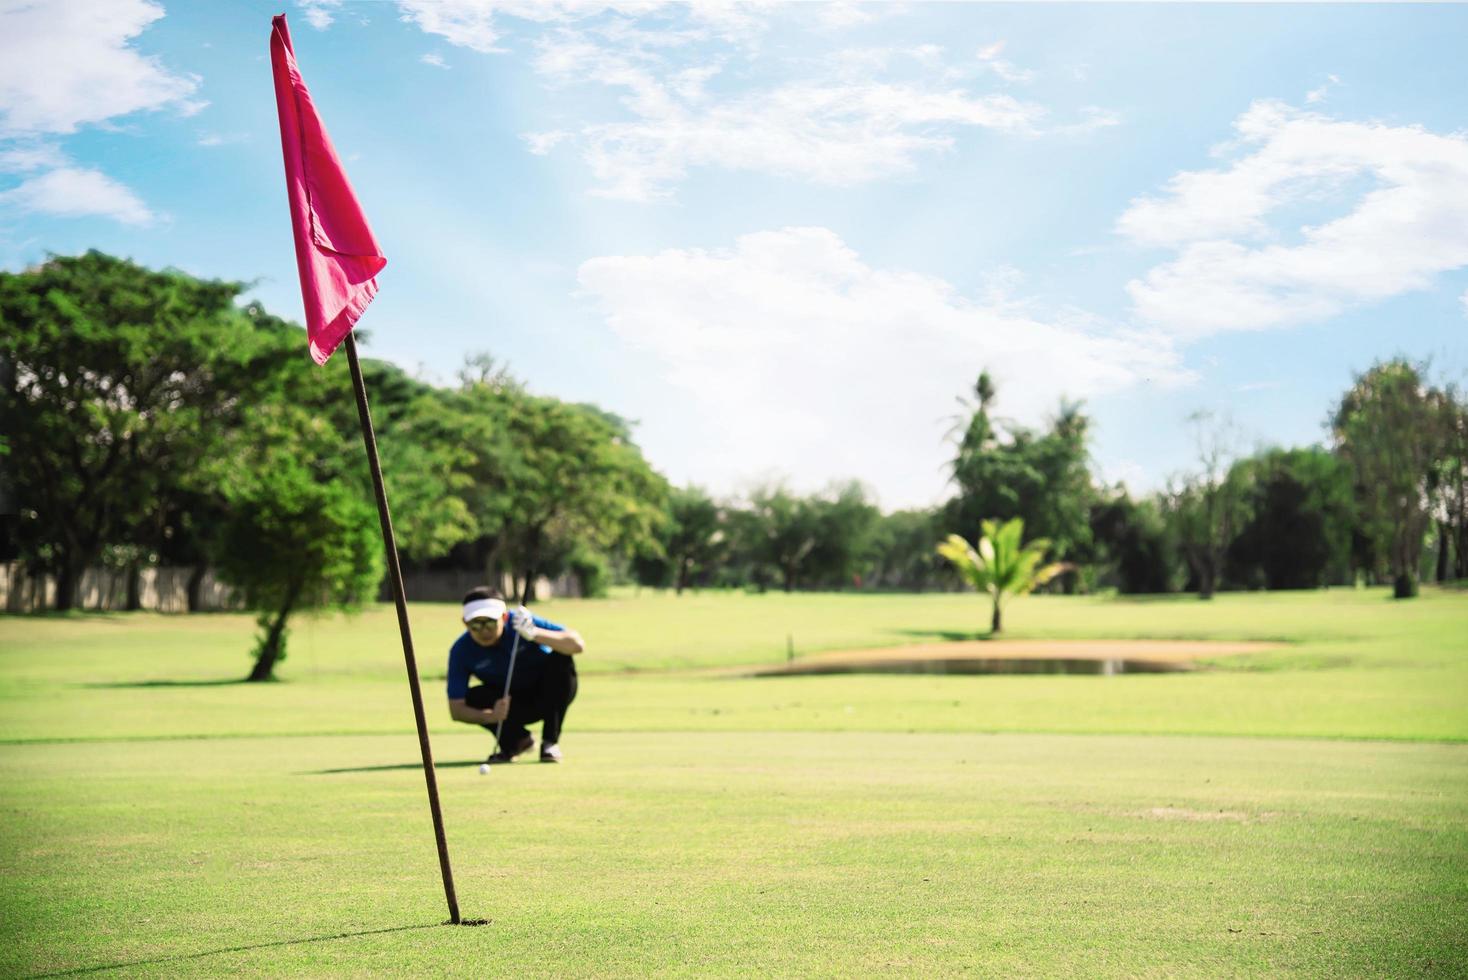 l'homme joue à l'activité sportive de golf en plein air - les gens dans le concept de sport de golf photo